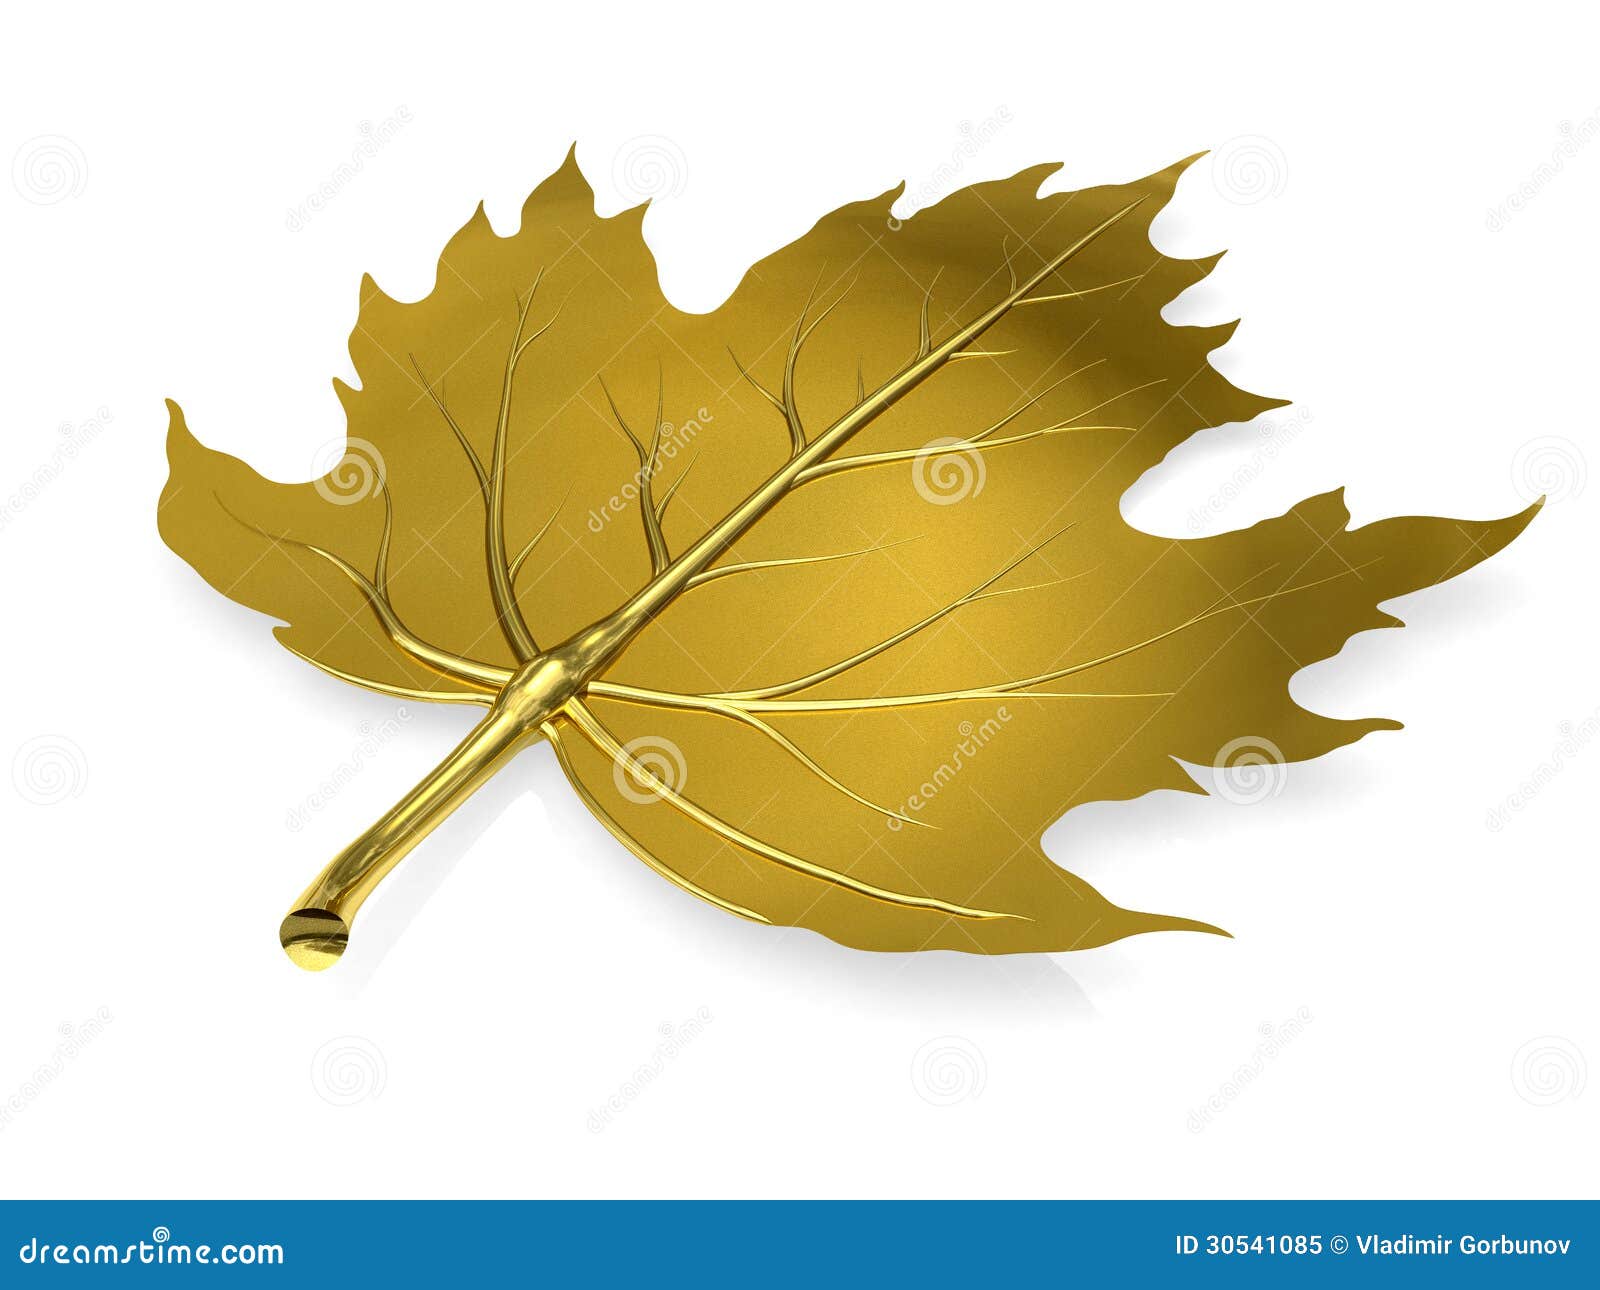 Premium Vector  Autumn golden maple leaf clipart